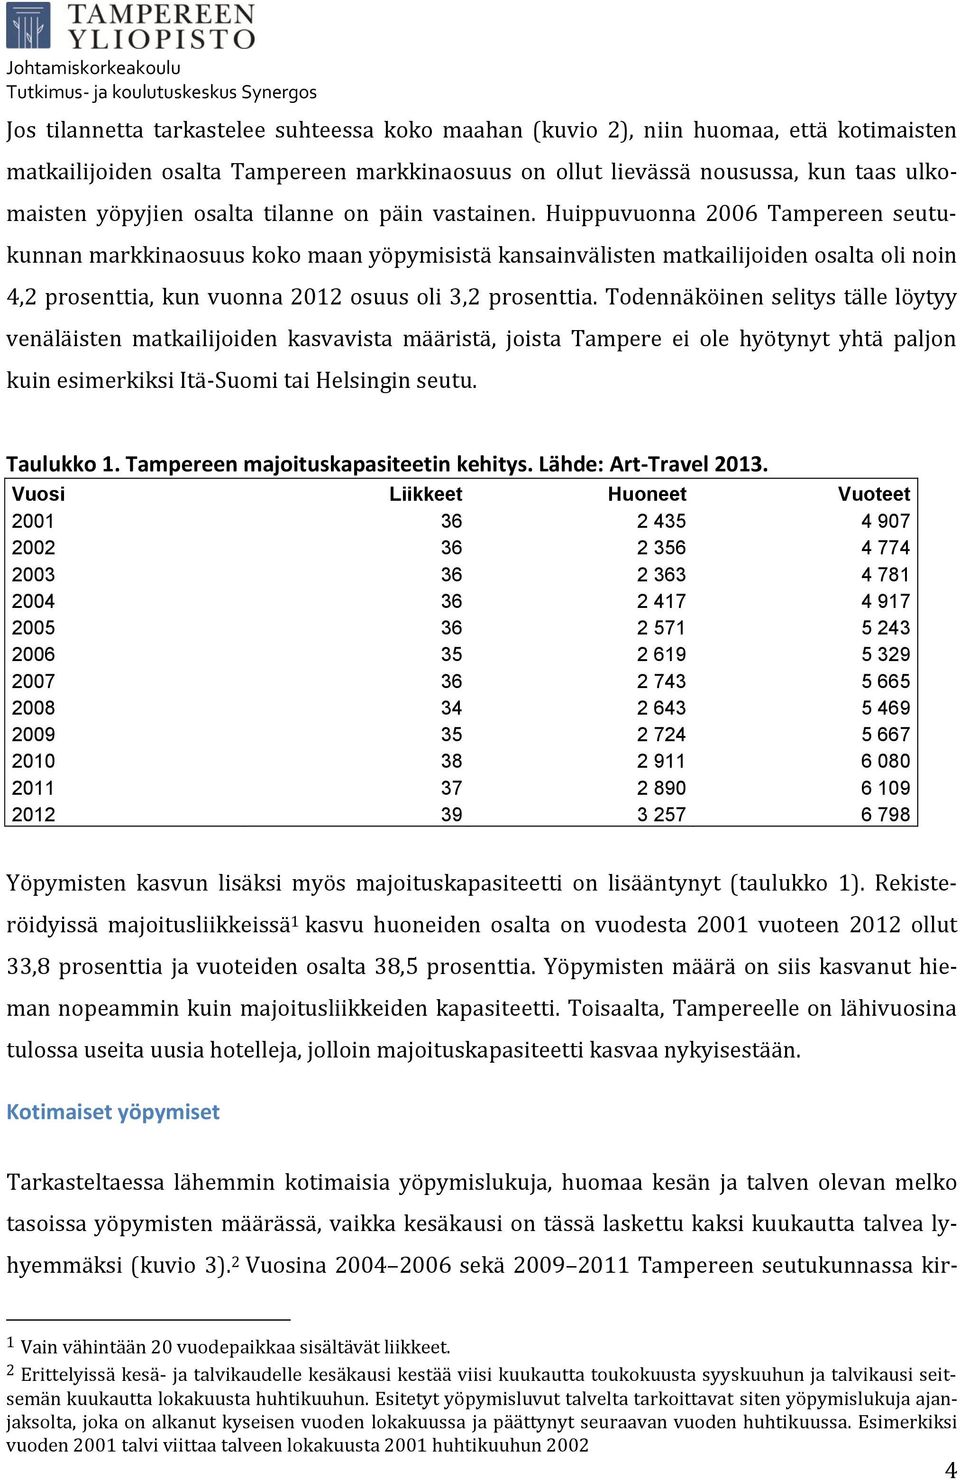 Huippuvuonna 2006 Tampereen seutukunnan markkinaosuus koko maan yöpymisistä kansainvälisten matkailijoiden osalta oli noin 4,2 prosenttia, kun vuonna 2012 osuus oli 3,2 prosenttia.